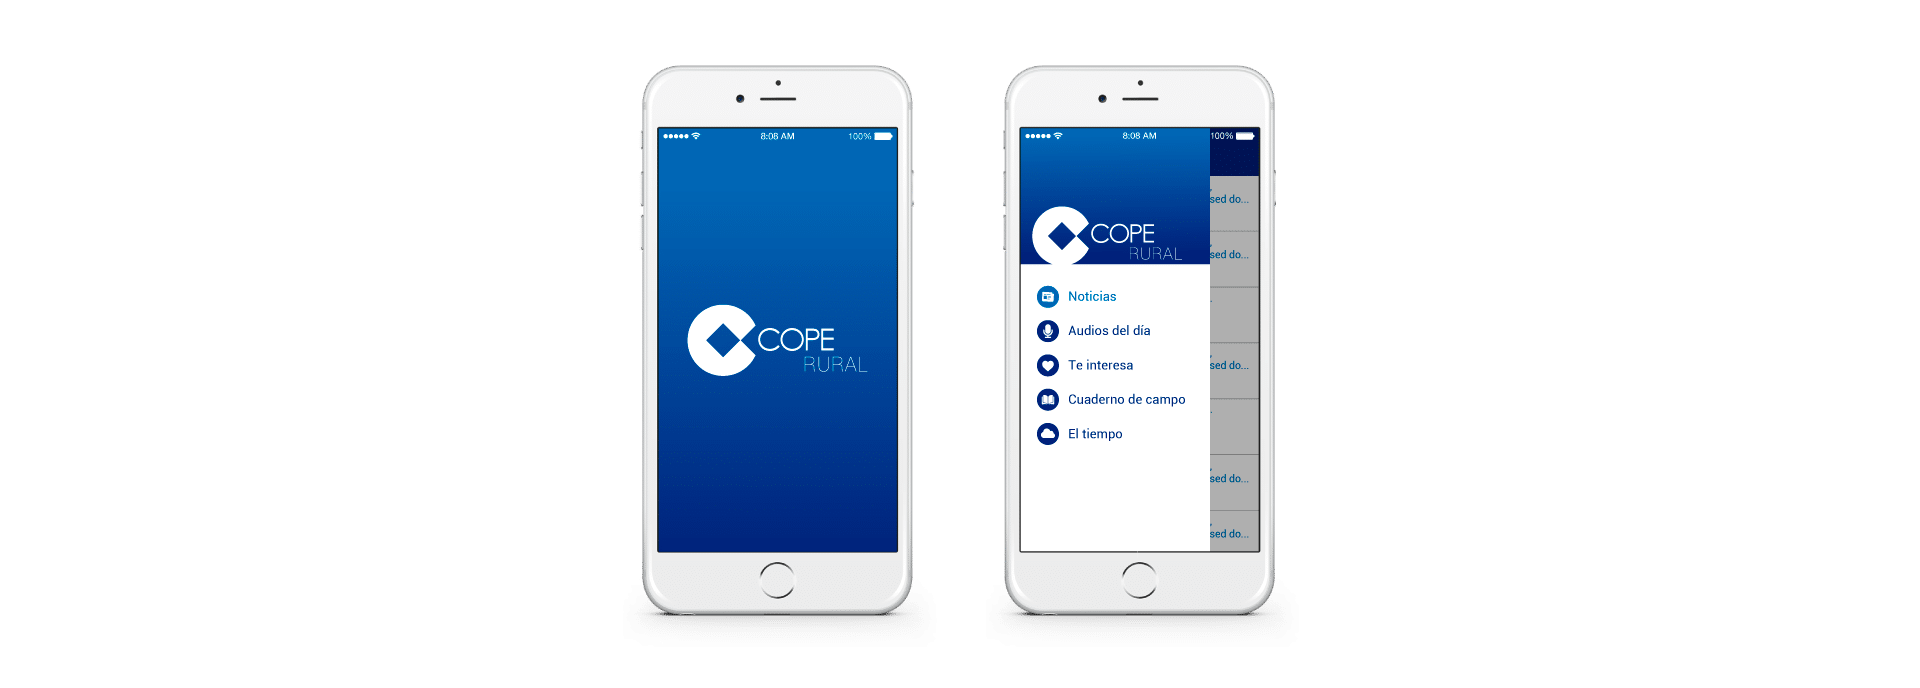 COPE desarrollo app